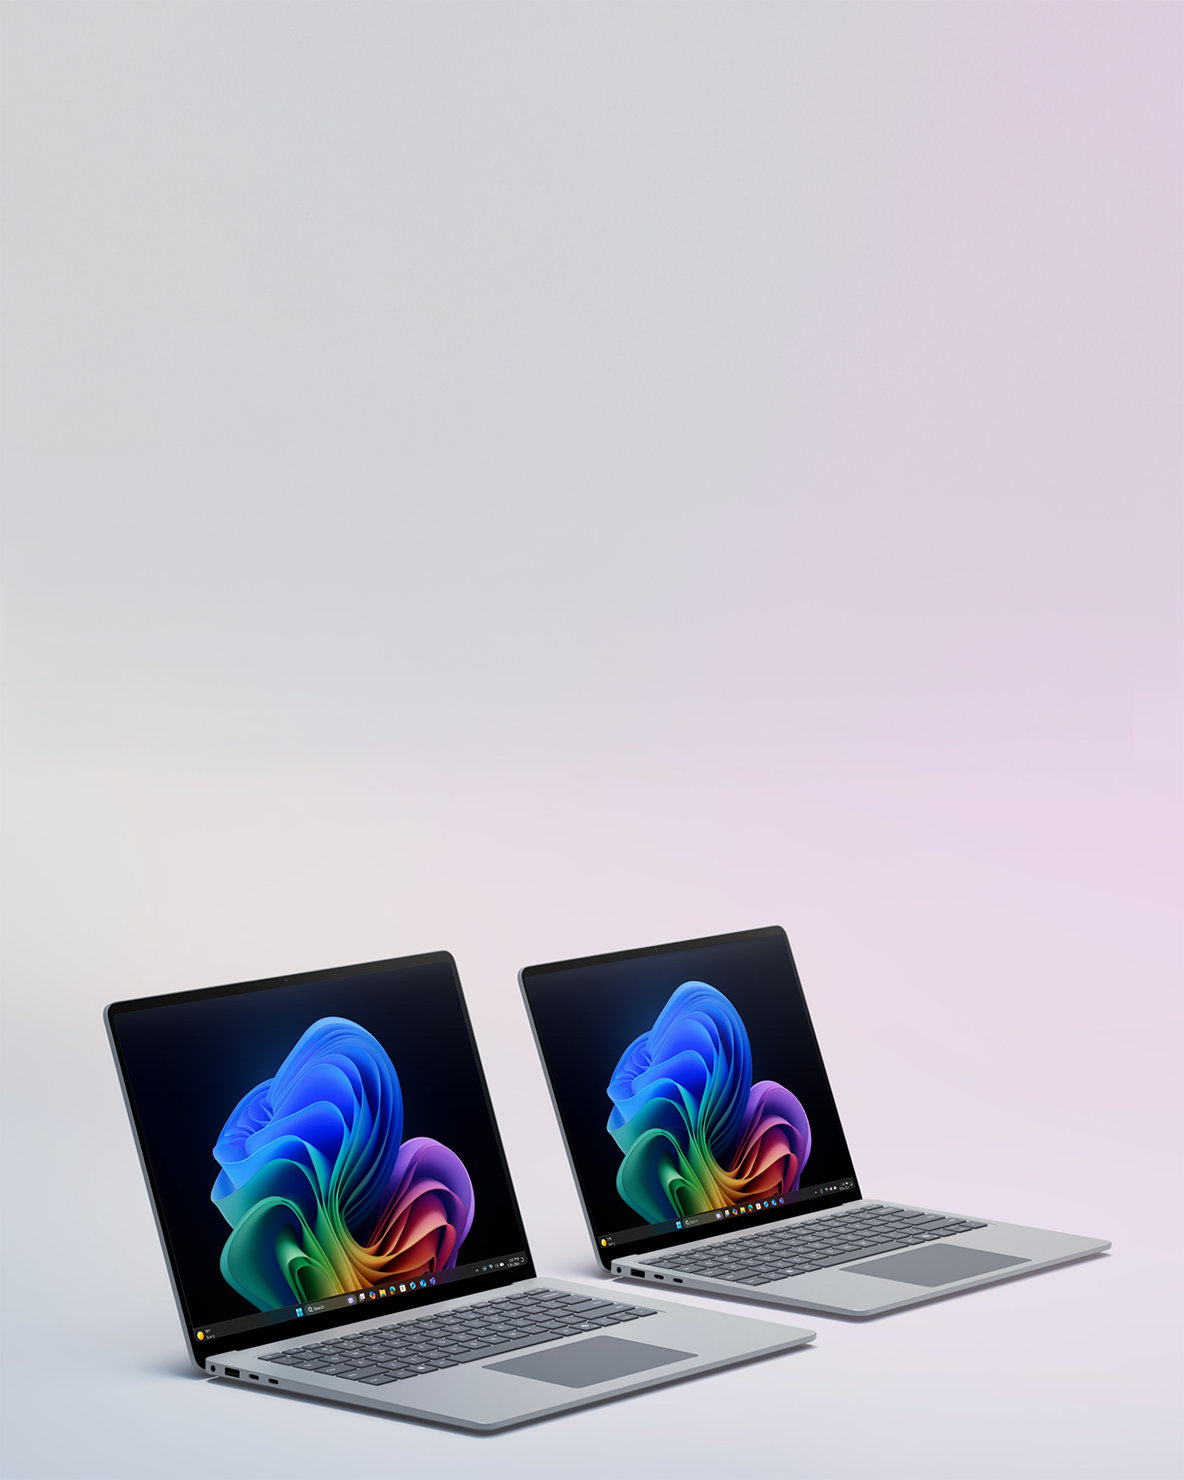 Απεικόνιση δύο συσκευών Surface Laptop σε παράθεση